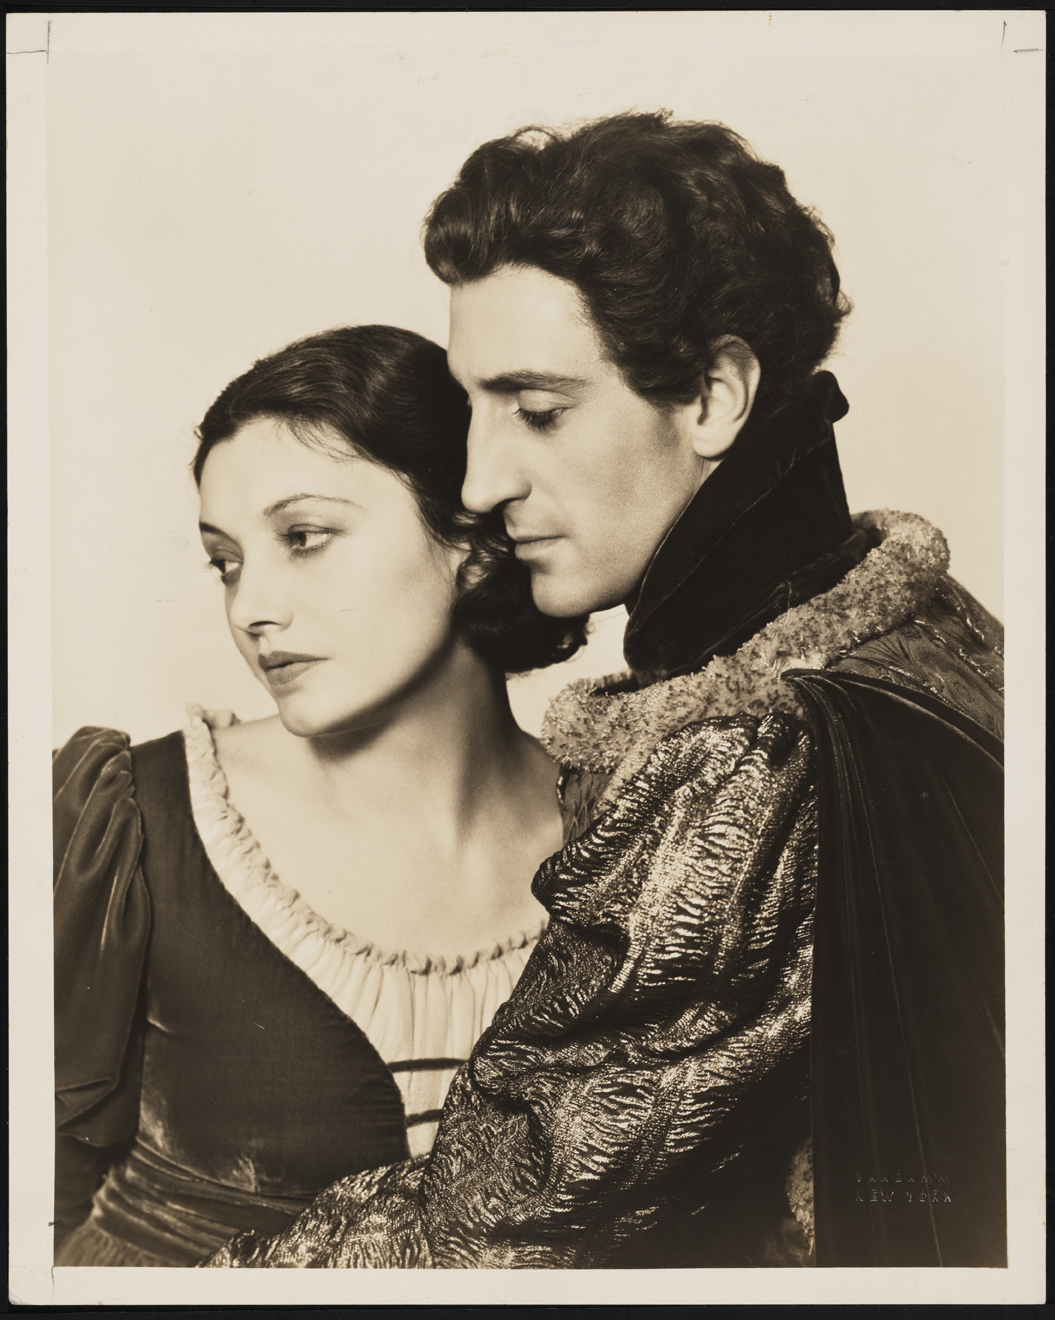 バンダム。 [キャサリン・コーネルとバジル・ラスボーン] 1934年。ニューヨーク市立博物館。 35.169.3